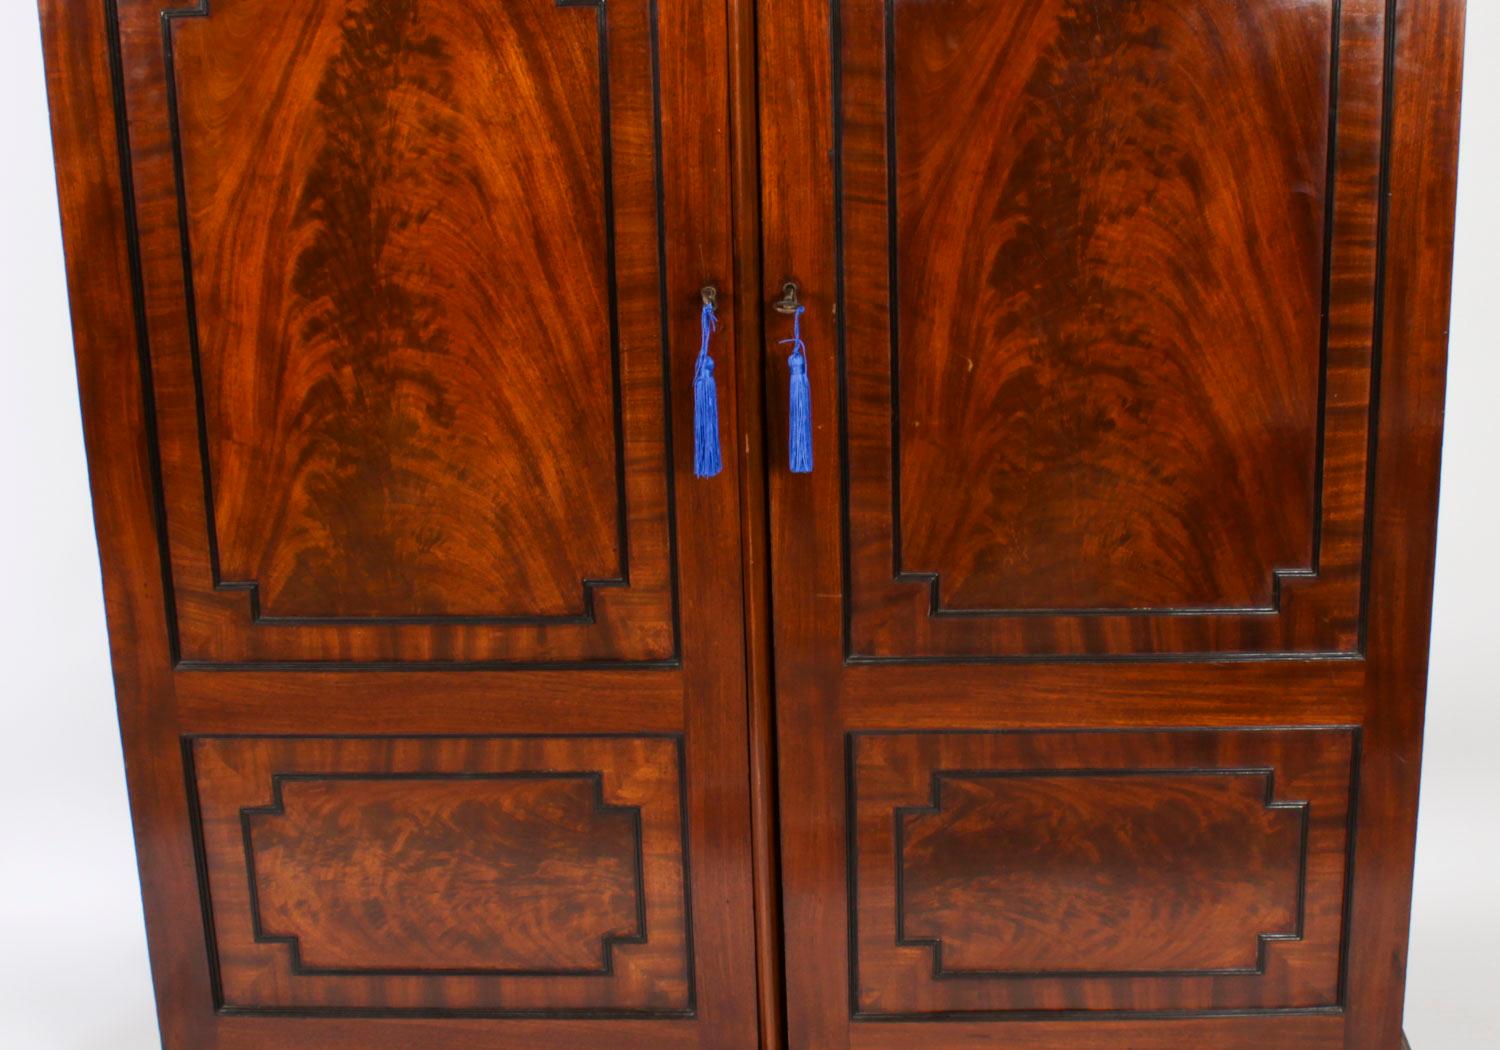 Il s'agit d'une impressionnante et élégante armoire pour homme en acajou flammé de style Régence anglaise, à la manière de Marsh & Tatham, datant d'environ 1815.

Cette magnifique armoire haute à deux portes présente une corniche exquise avec des